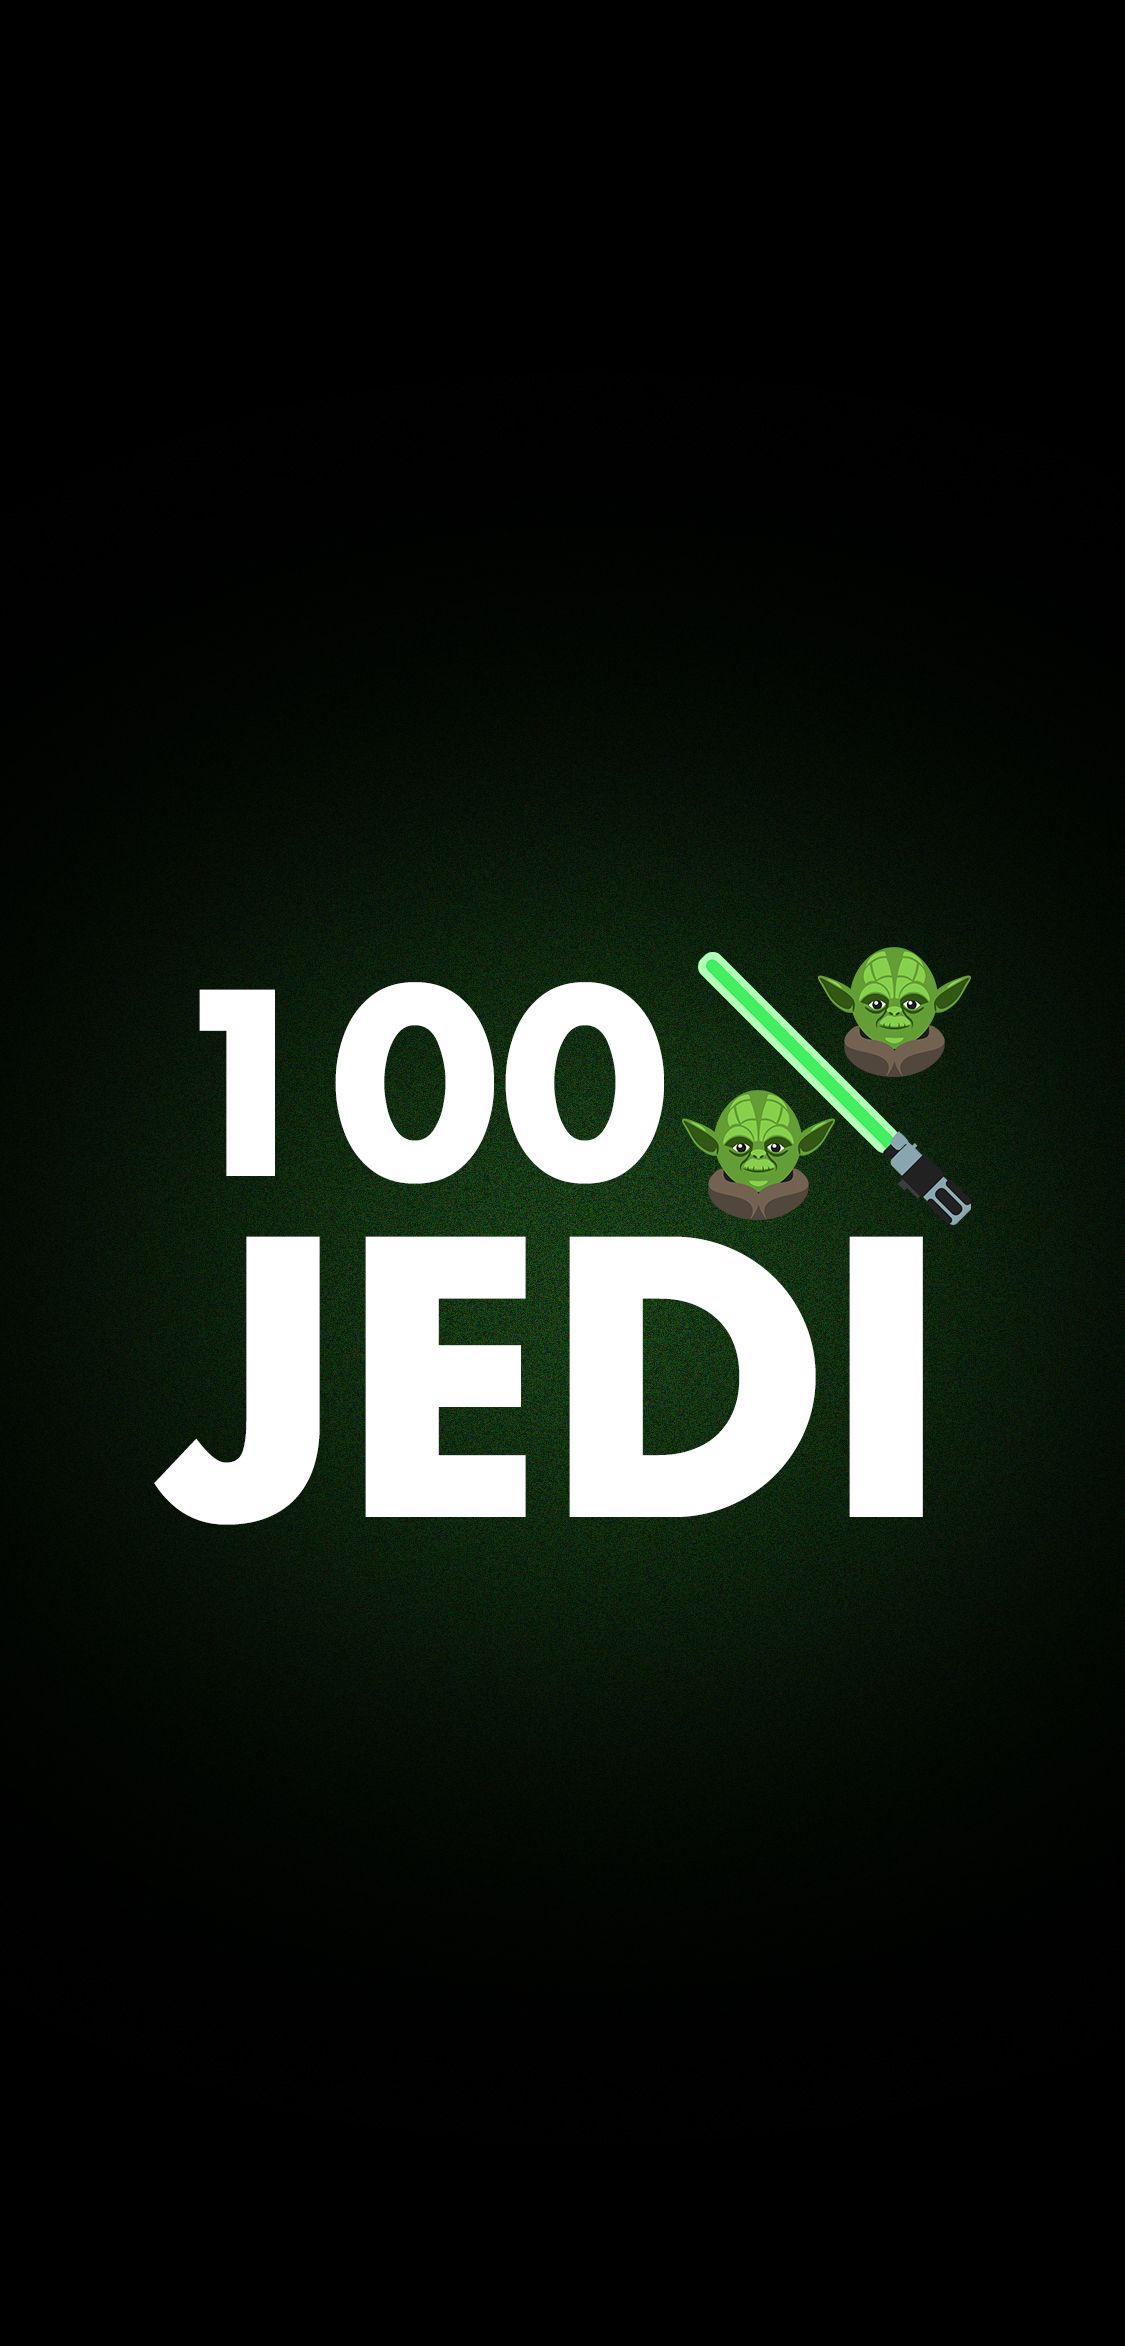 Star Wars 100% Jedi Yoda Phone Wallpaper. Star wars yoda, Yoda lightsaber, Star wars wallpaper